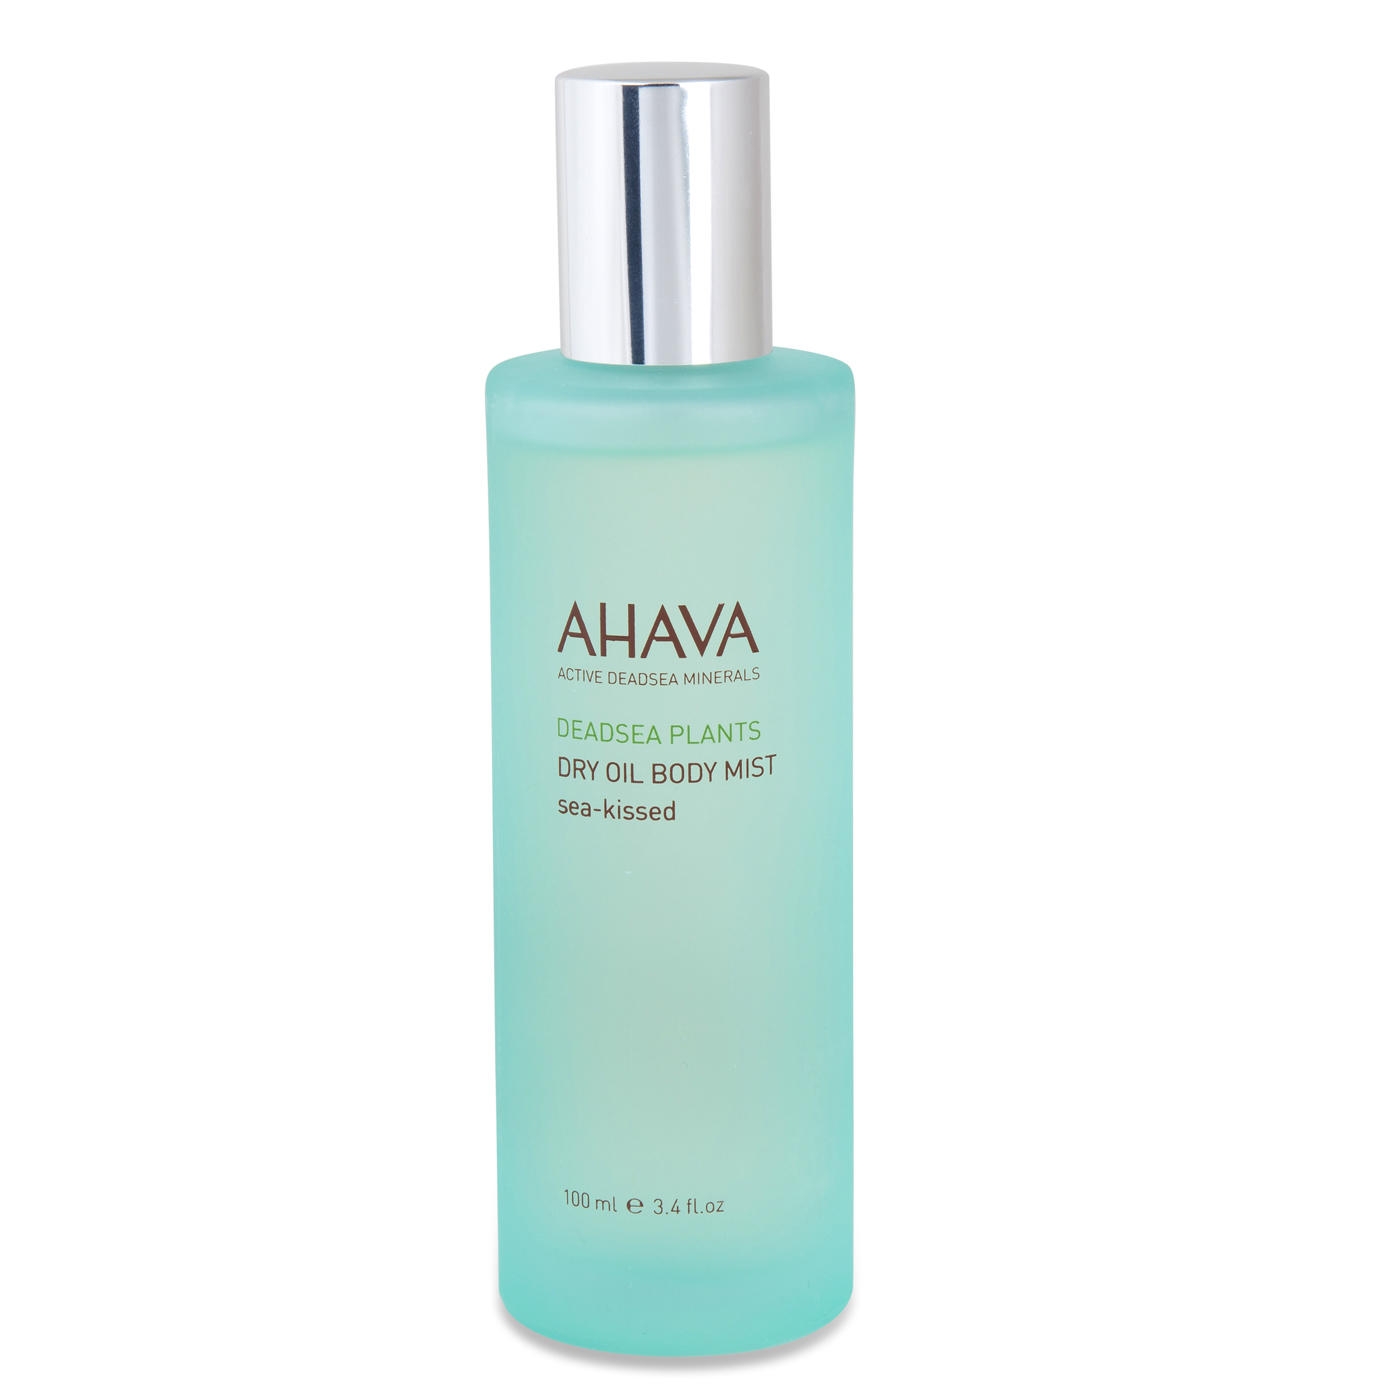 AHAVA Dry Oil Body Mist - Sea-Kissed - 1